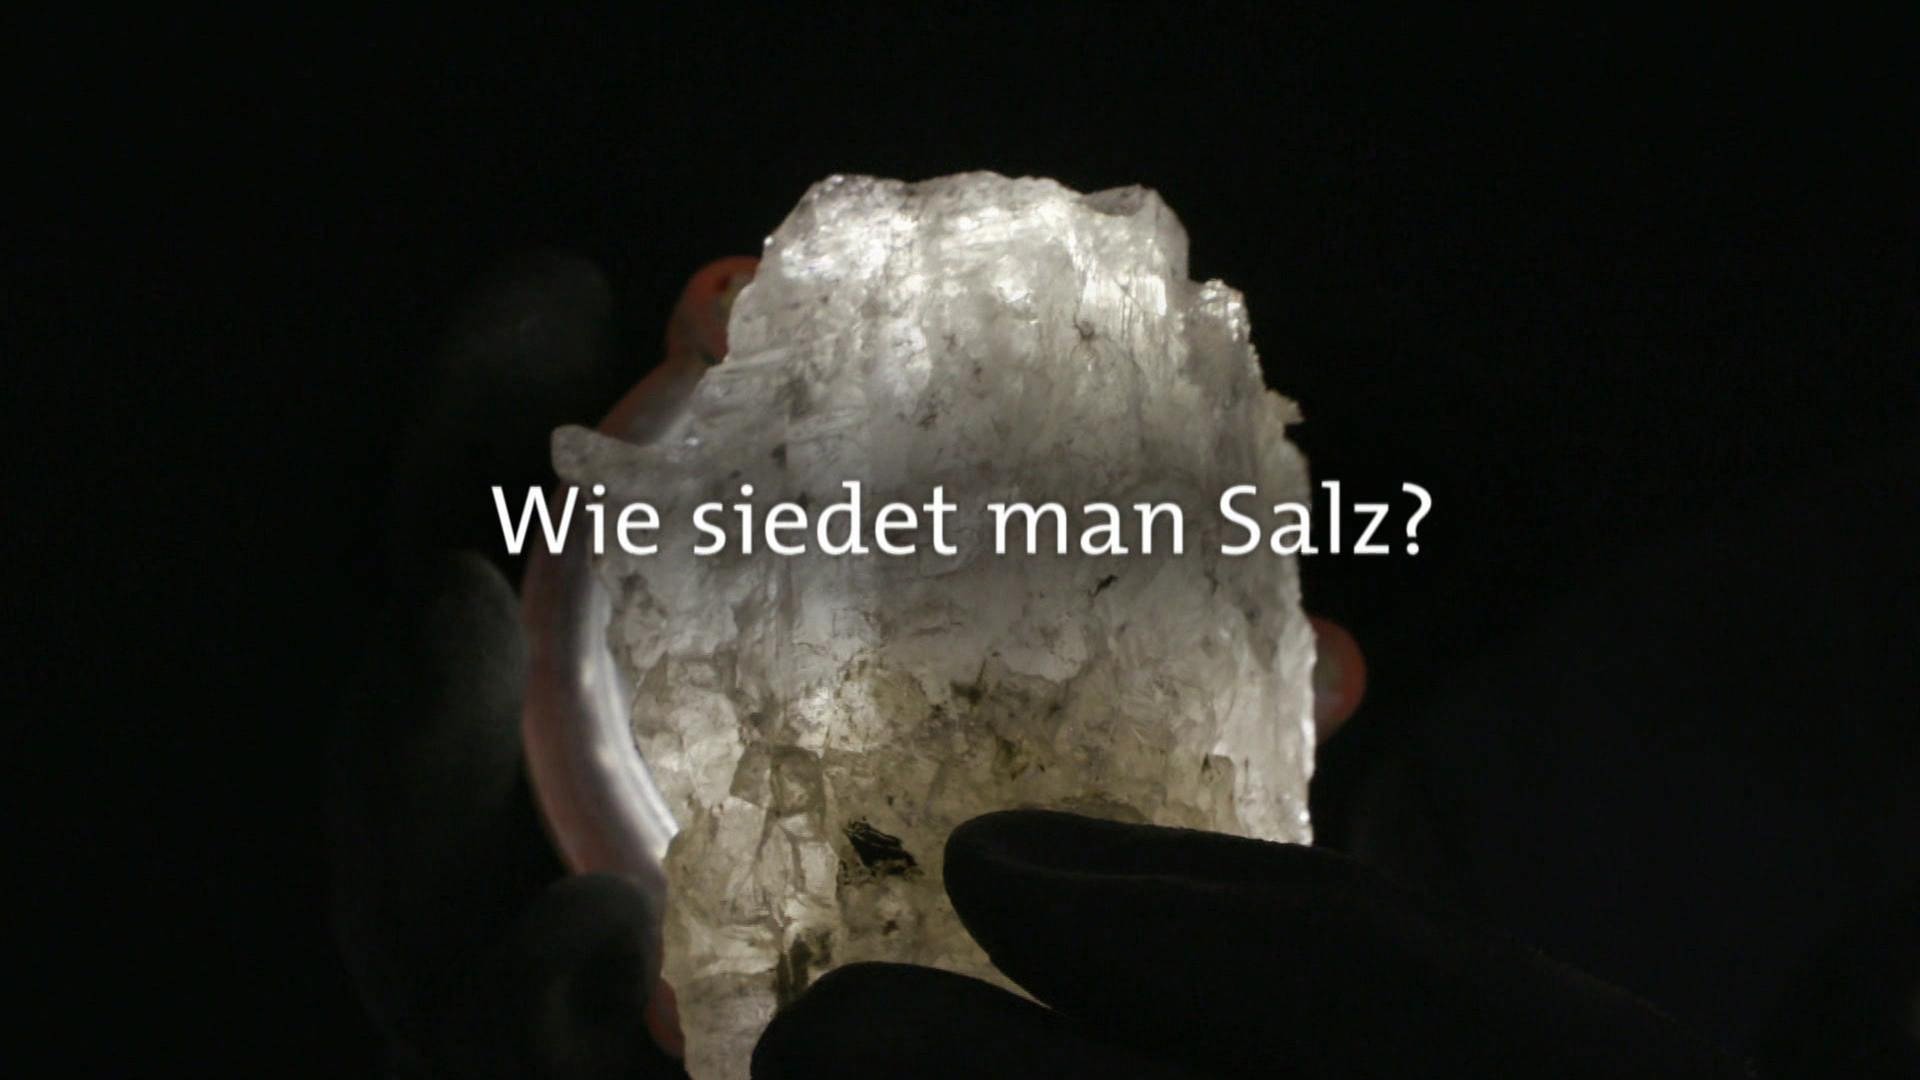 Wie siedet man Salz? · Frage trifft Antwort